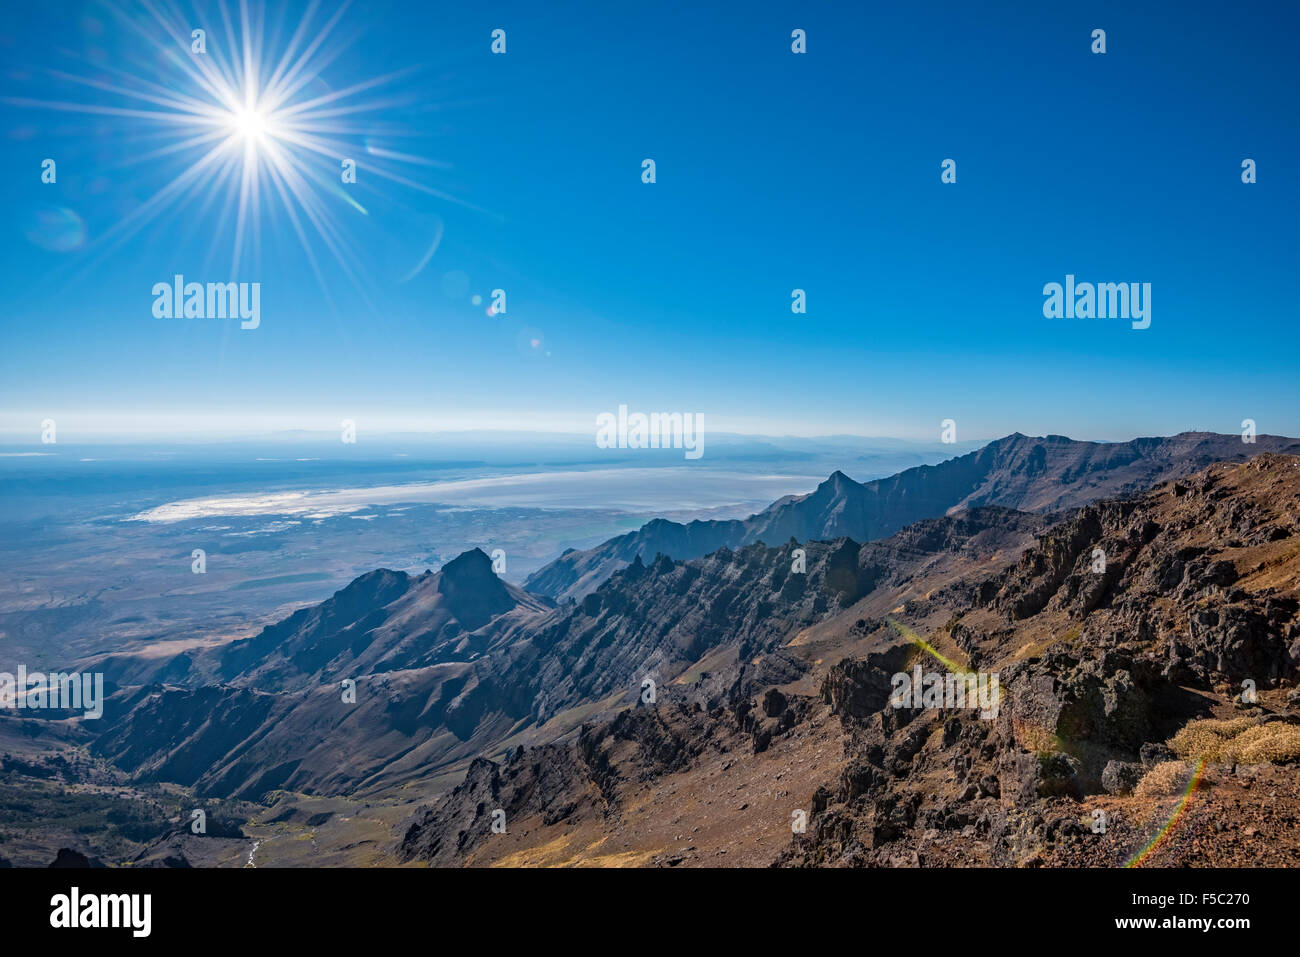 Vue du sommet de l'Alvord Desert à partir de l'est de la jante, le sud-est de l'Oregon Steens Mountain. Banque D'Images